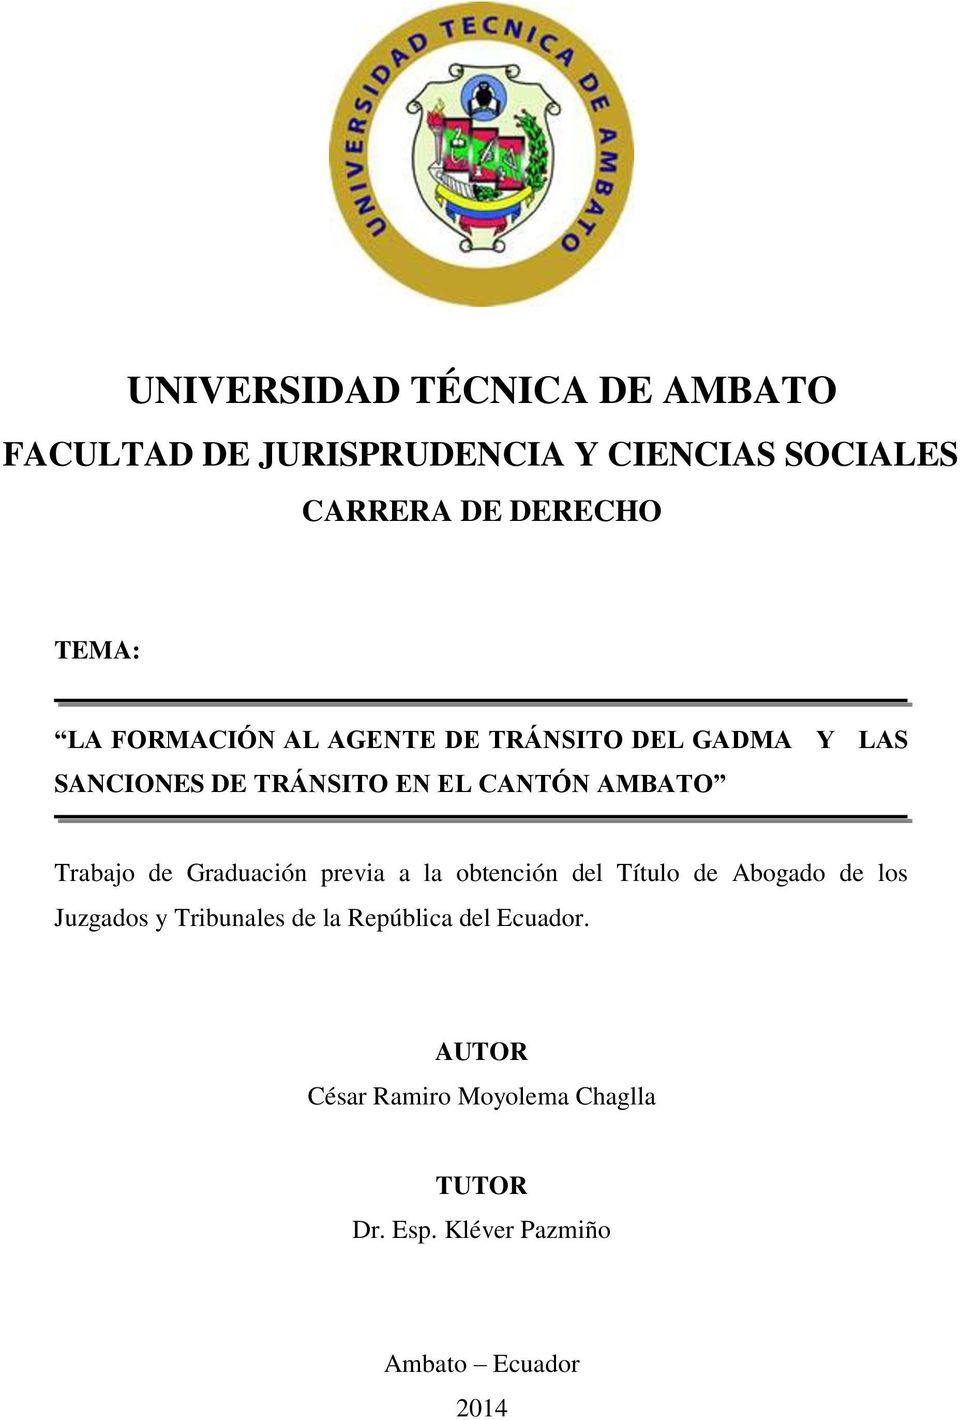 Graduación previa a la obtención del Título de Abogado de los Juzgados y Tribunales de la República del